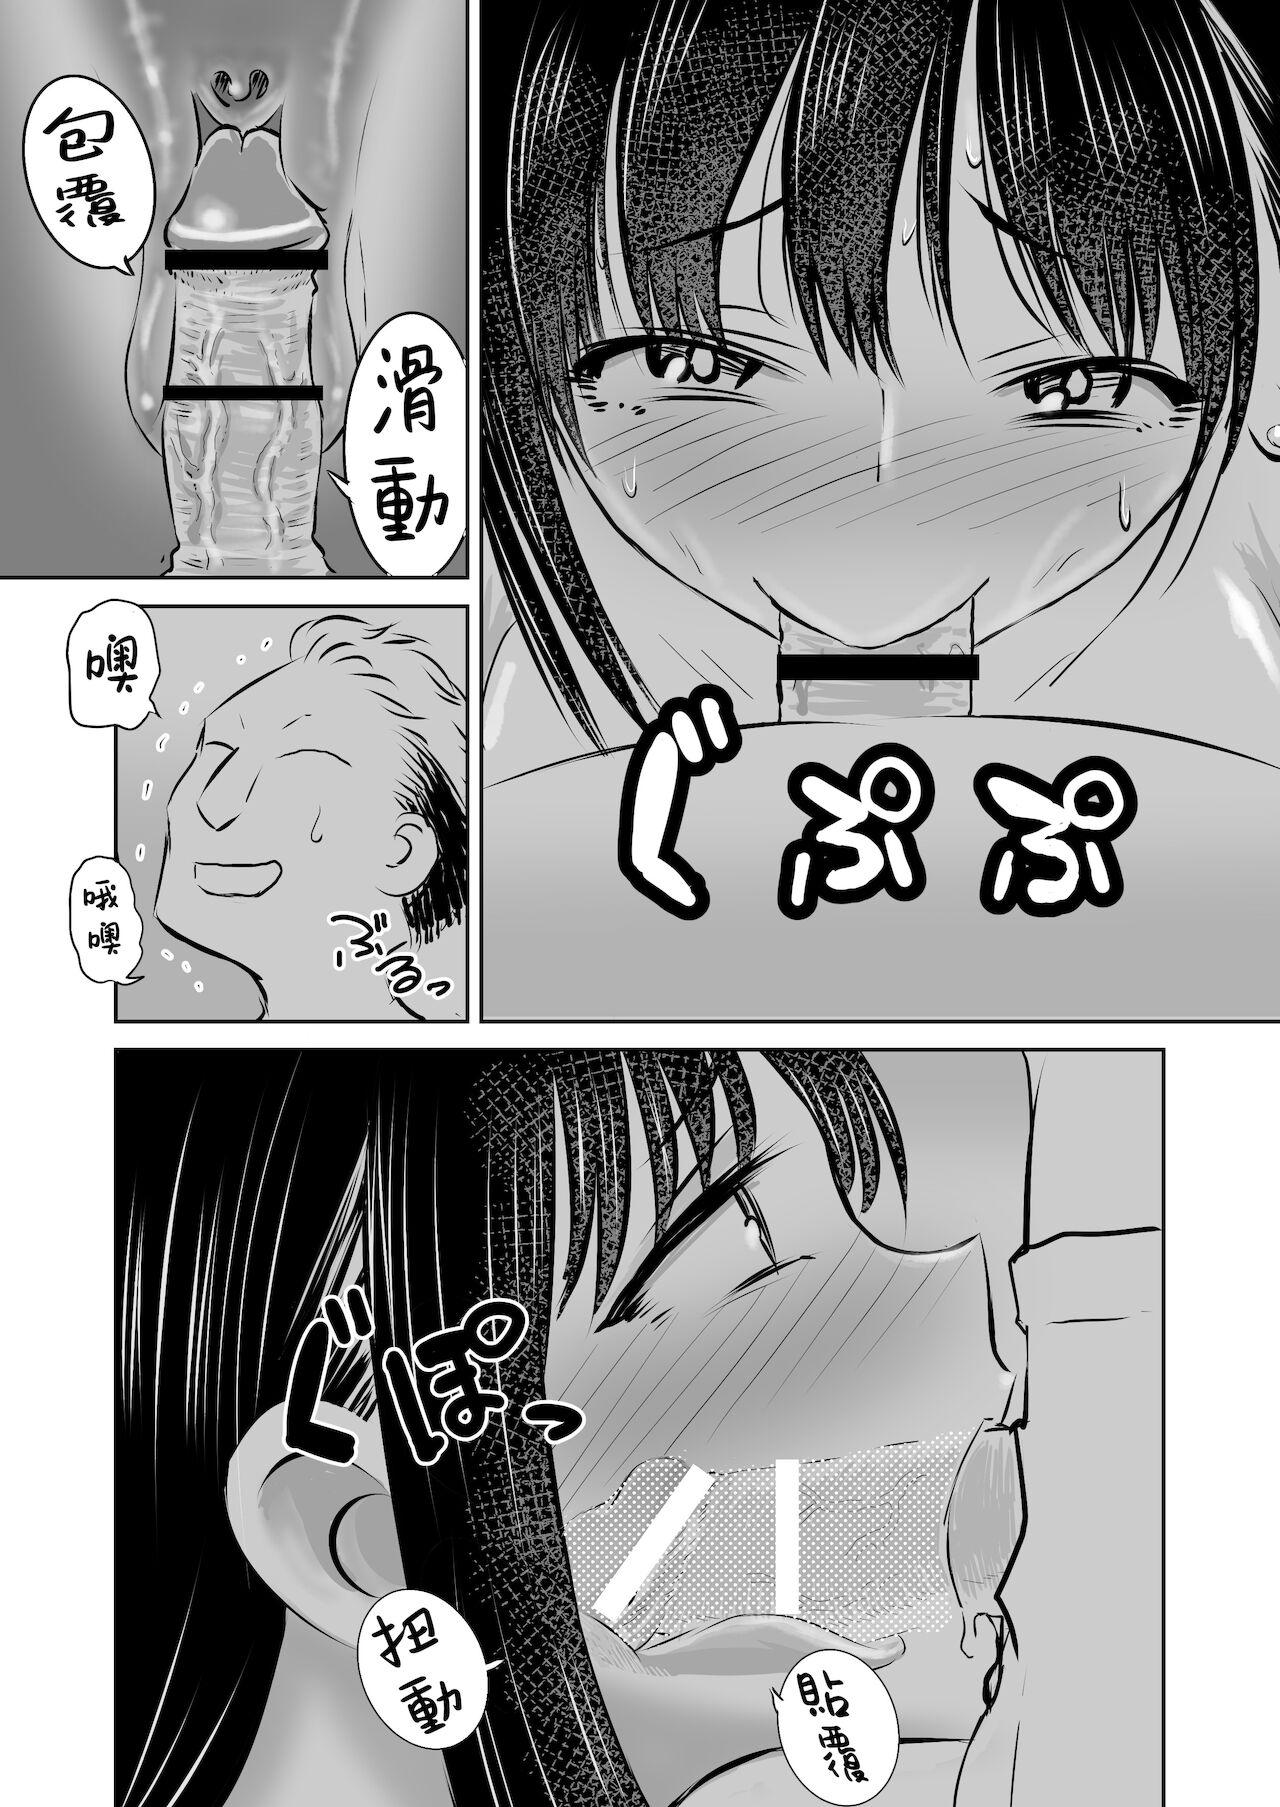 Punish 僕ヤバ5年後 差分まとめ - Boku no kokoro no yabai yatsu Anime - Page 5